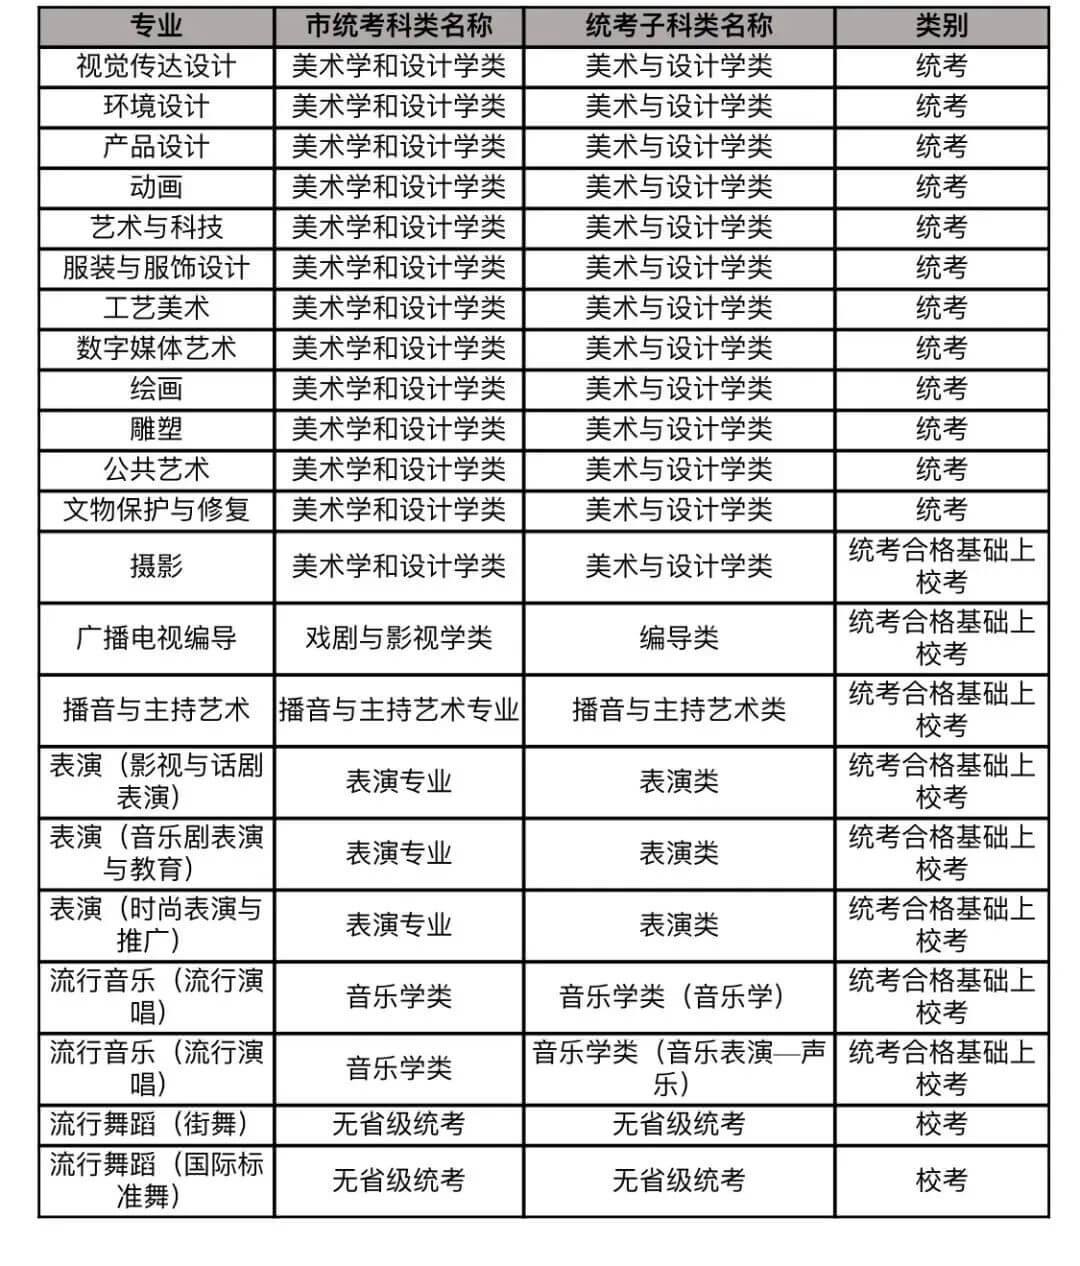 北京画室已将发布艺考信息的25所高校整理好,19